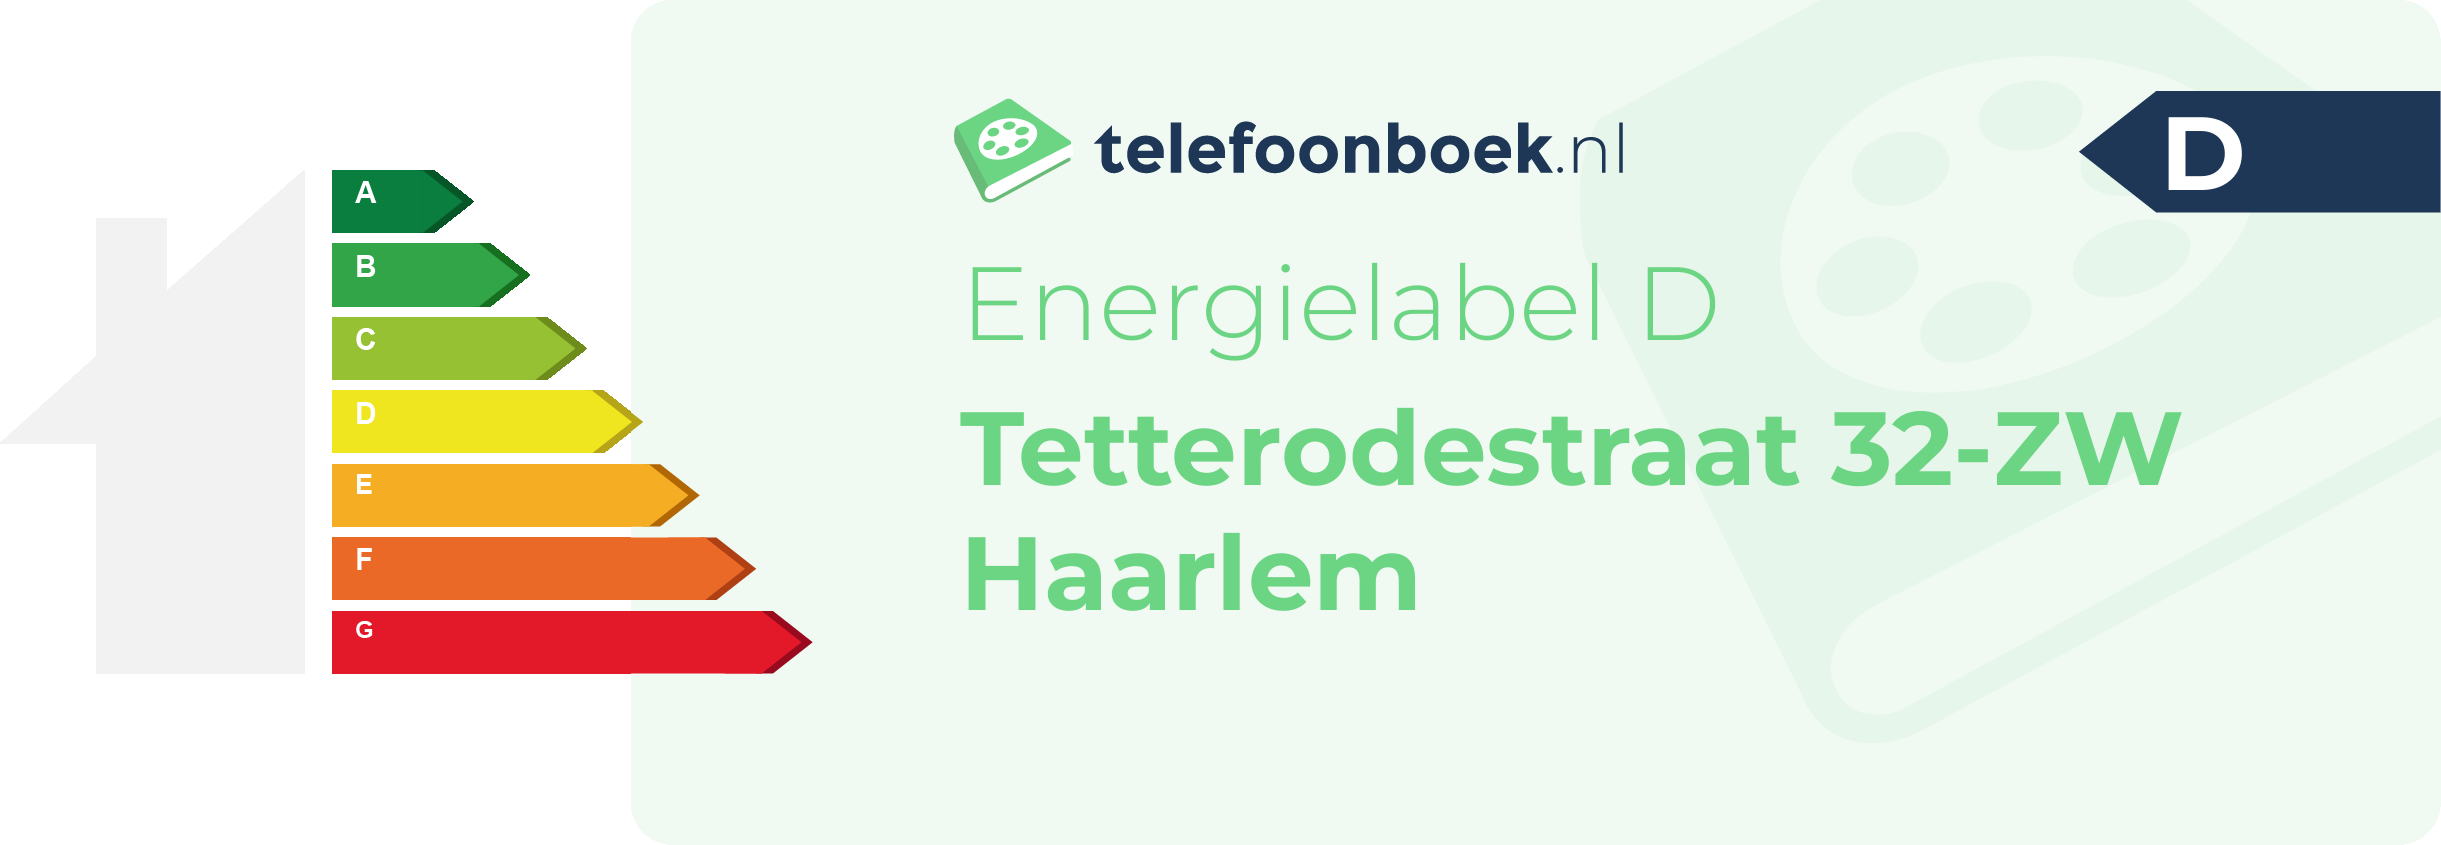 Energielabel Tetterodestraat 32-ZW Haarlem